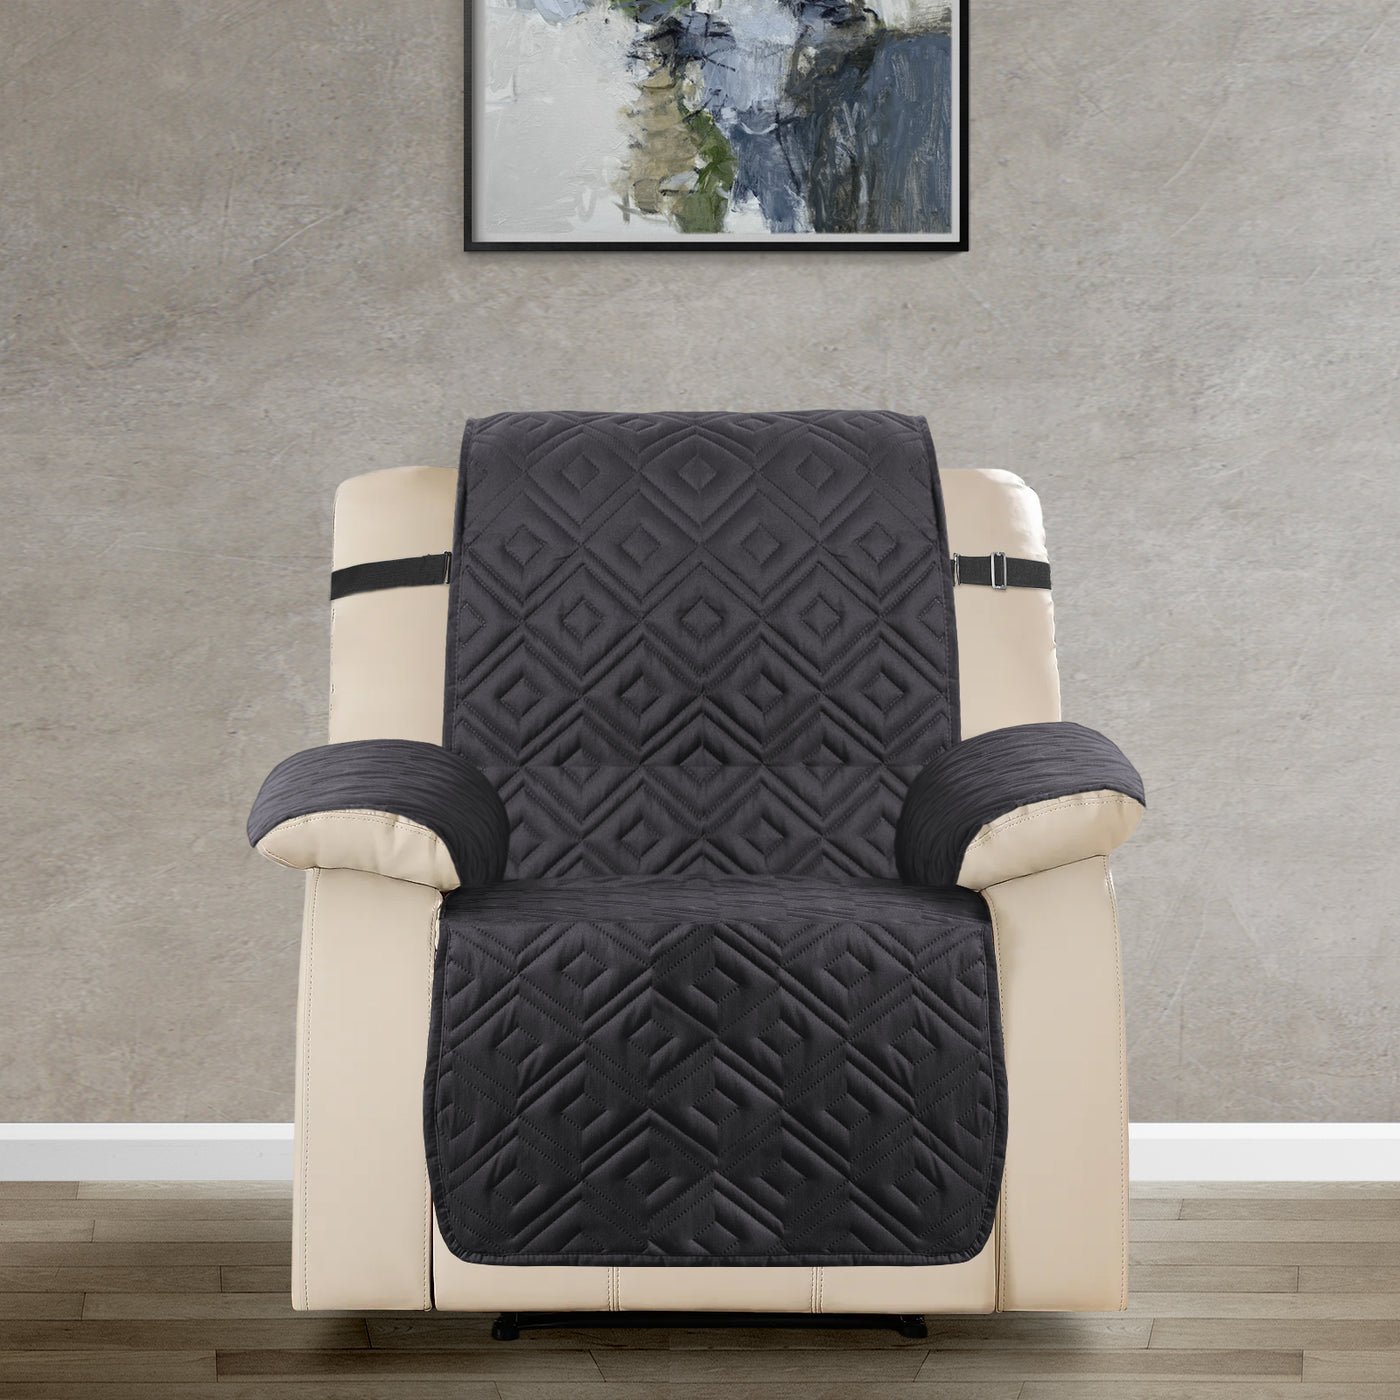 3 Seater Sofa Cover Non-Slip Waterproof Reversible Black/Dark Grey